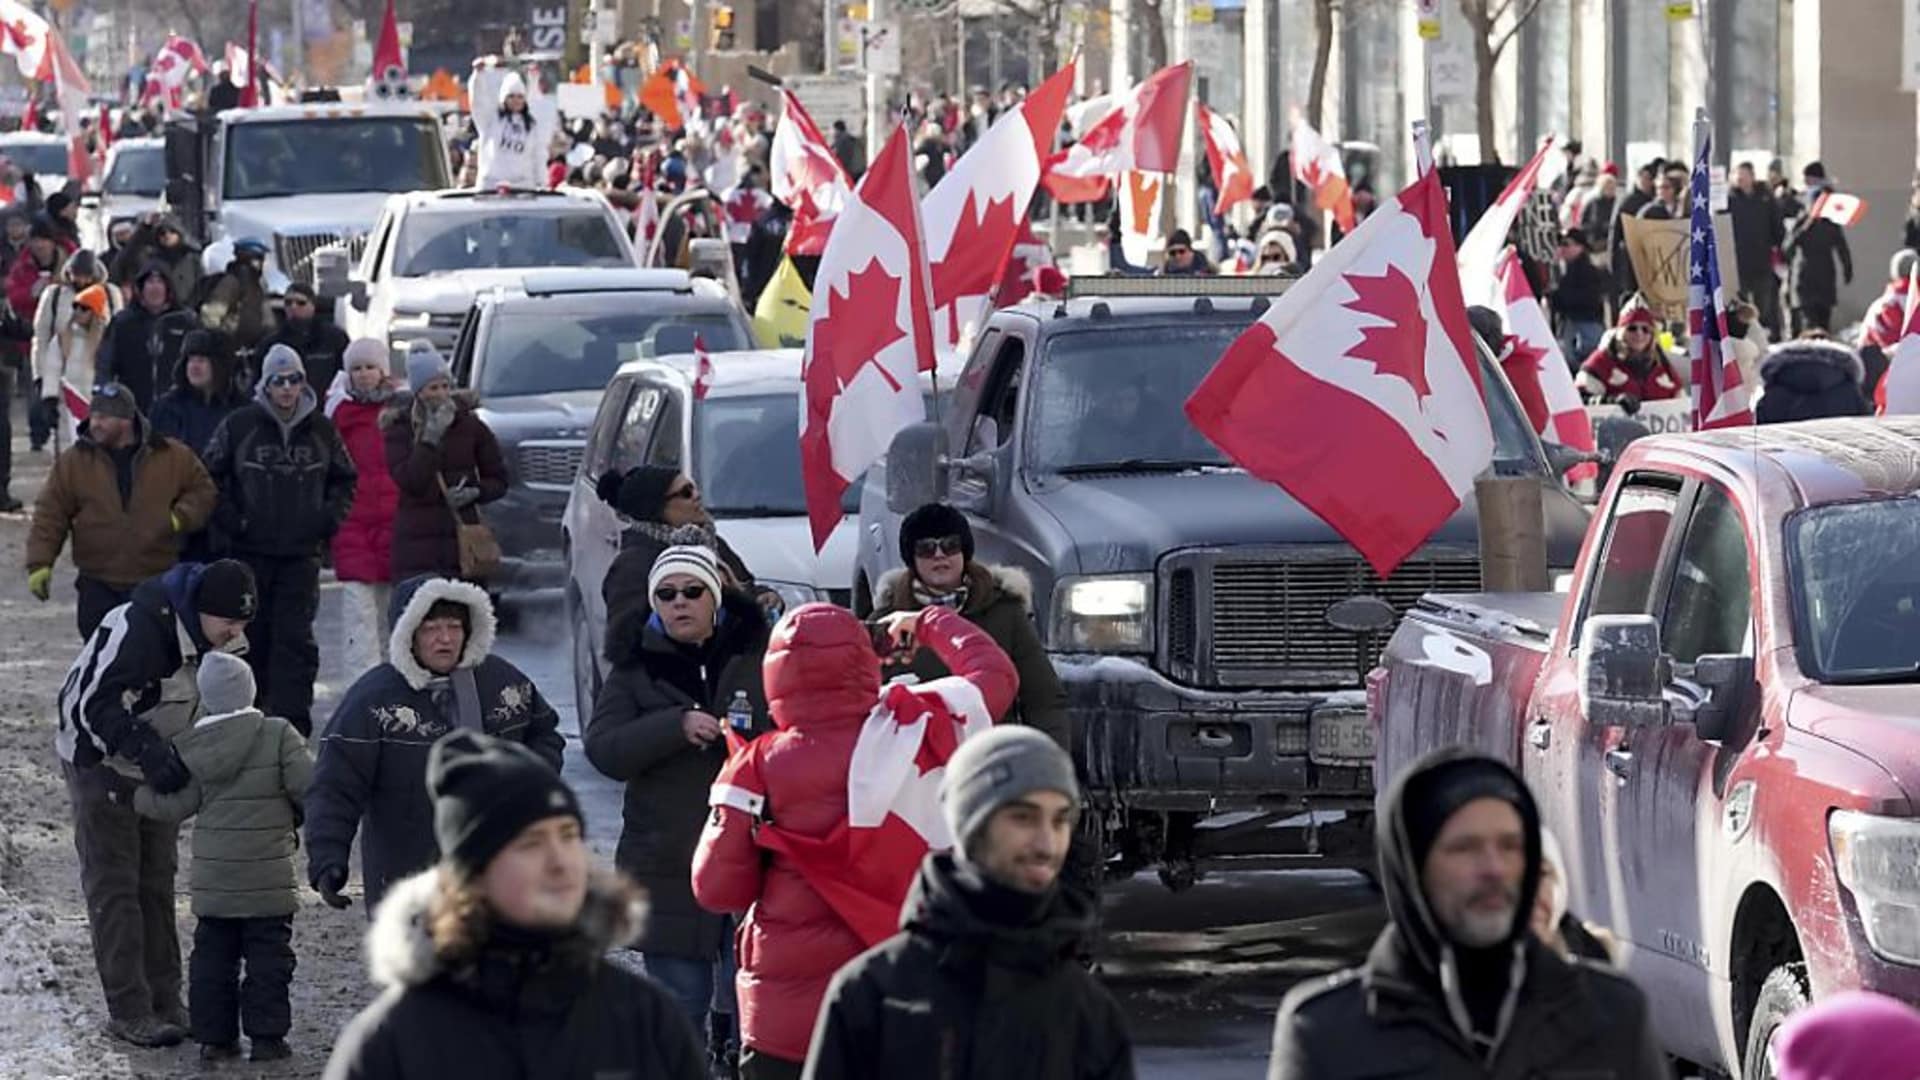 6 Febbraio 2022 – Sindaco Ottawa dichiara stato di emergenza per proteste anticovid. Iraq, partito curdo e sunniti boicottano elezioni capo dello Stato. Tunisia, Saied scioglie anche il Consiglio Superiore della magistratura